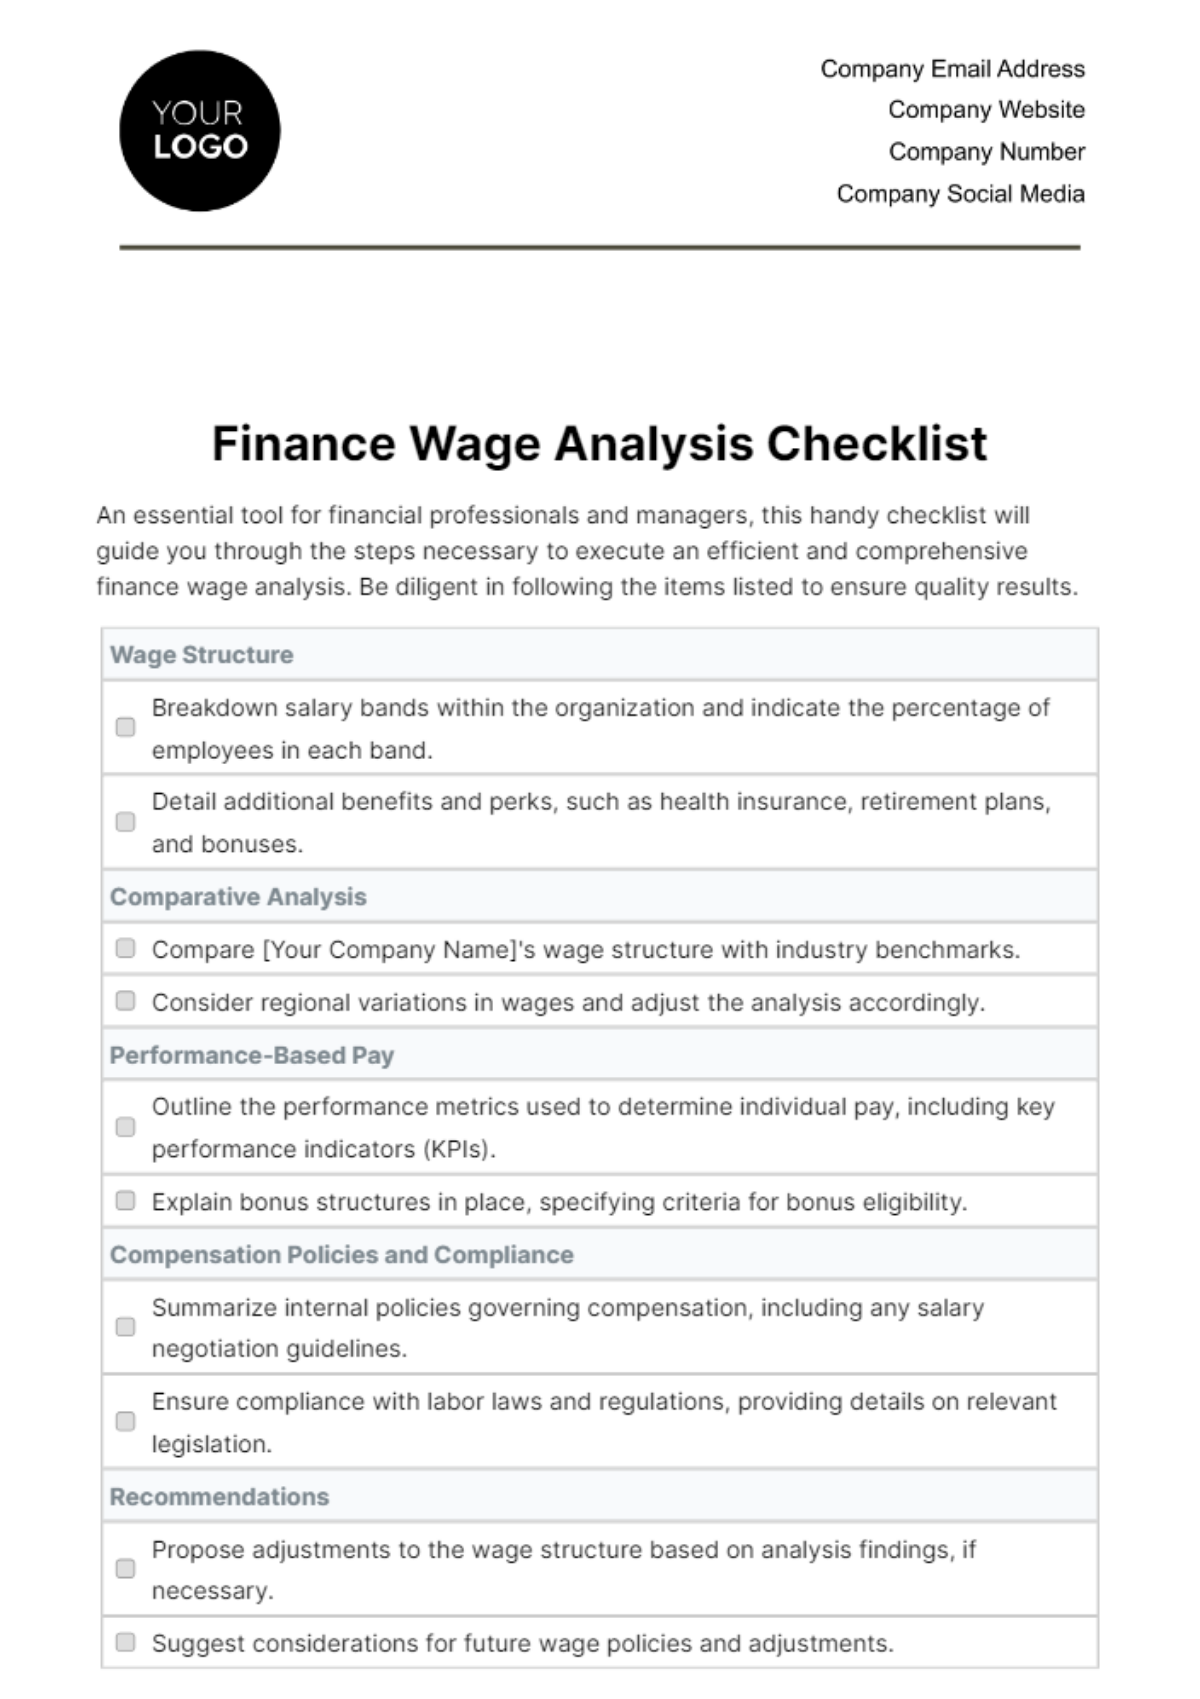 Finance Wage Analysis Checklist Template